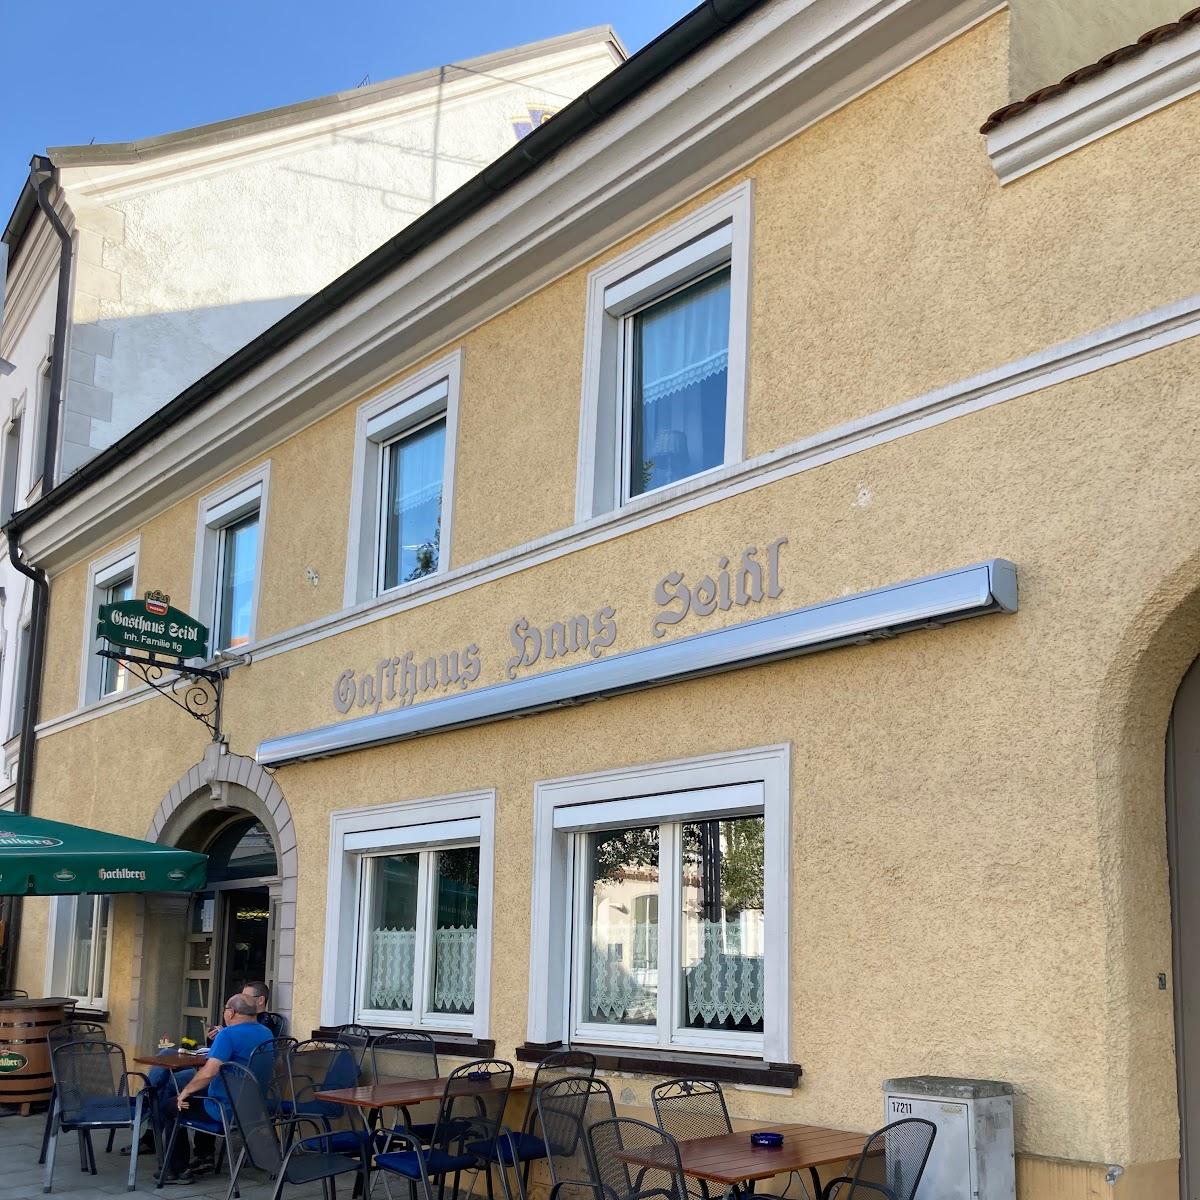 Restaurant "Gasthaus Seidl" in Osterhofen